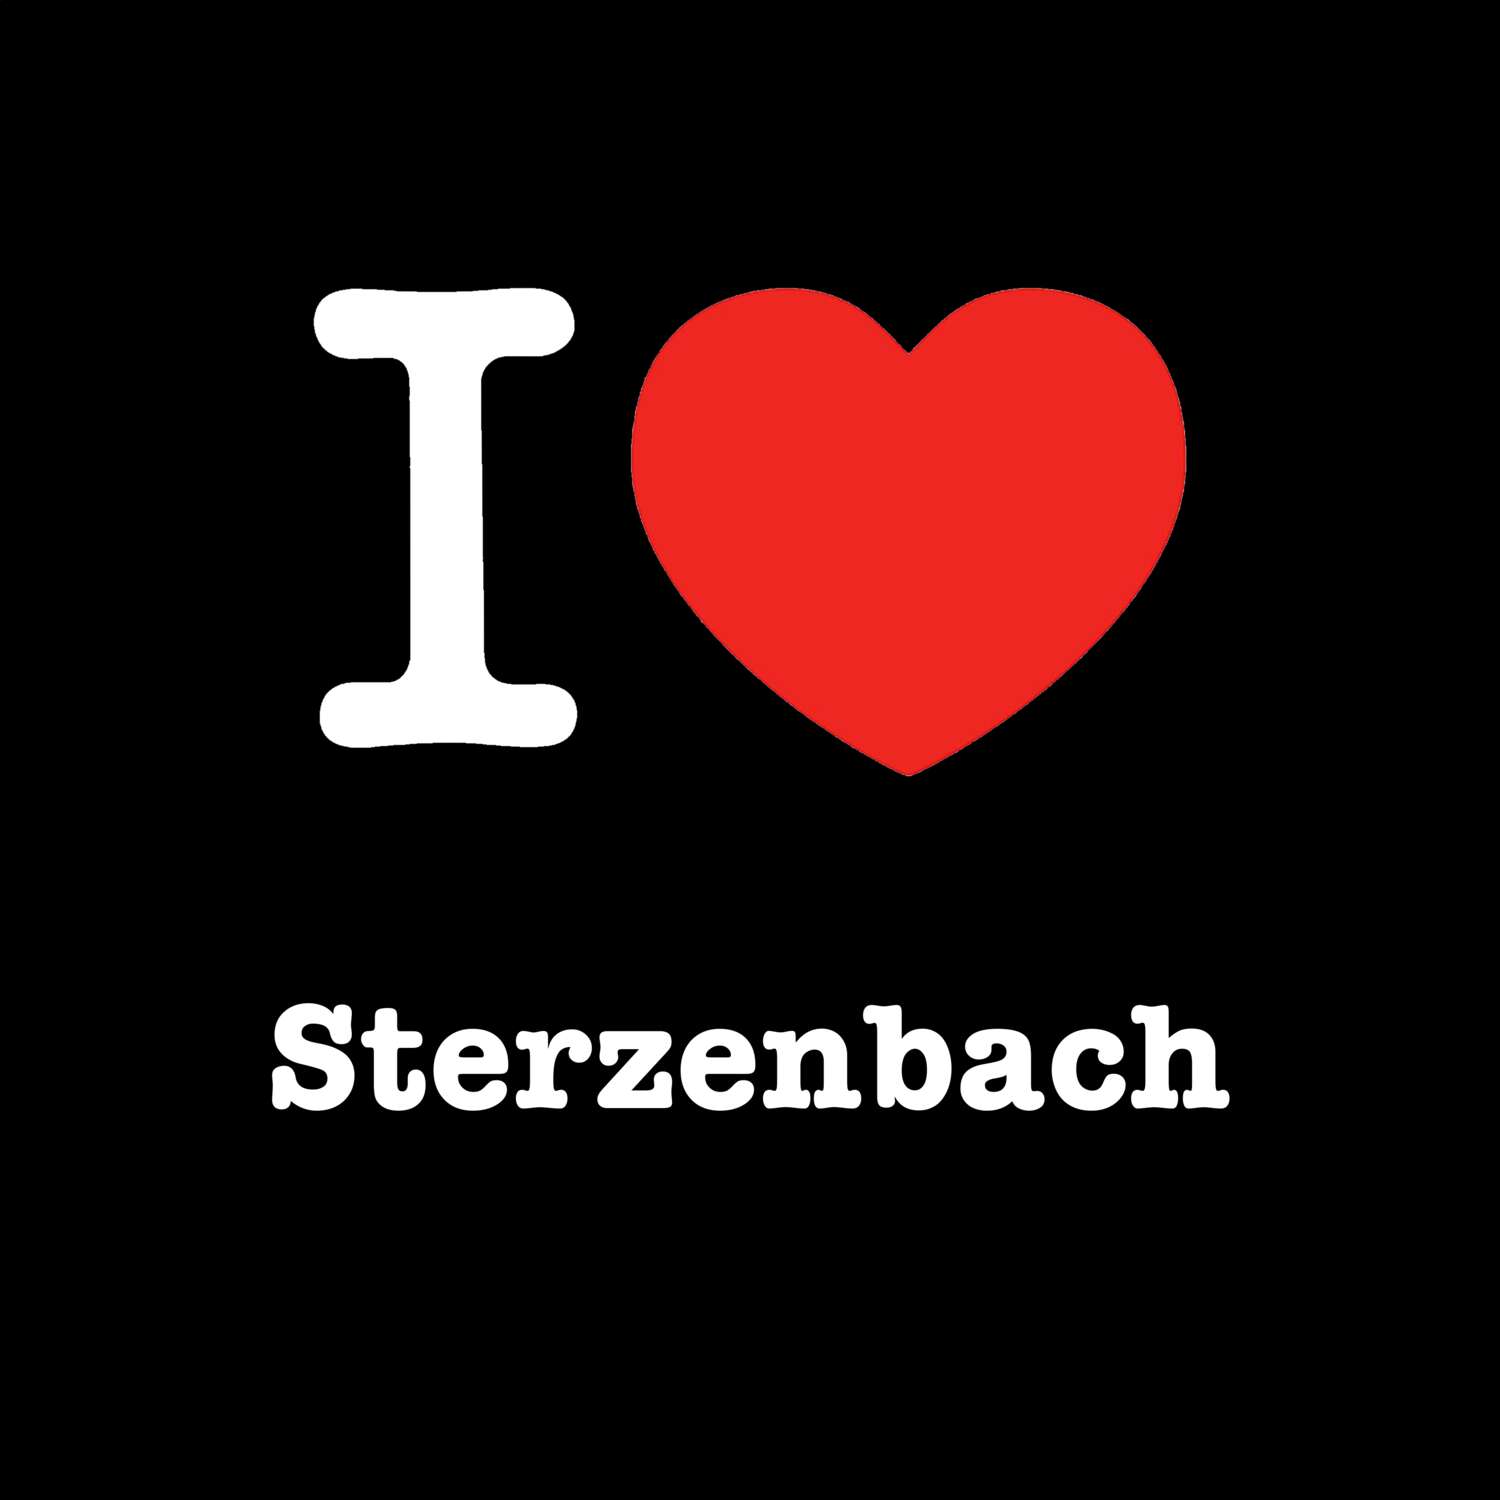 Sterzenbach T-Shirt »I love«